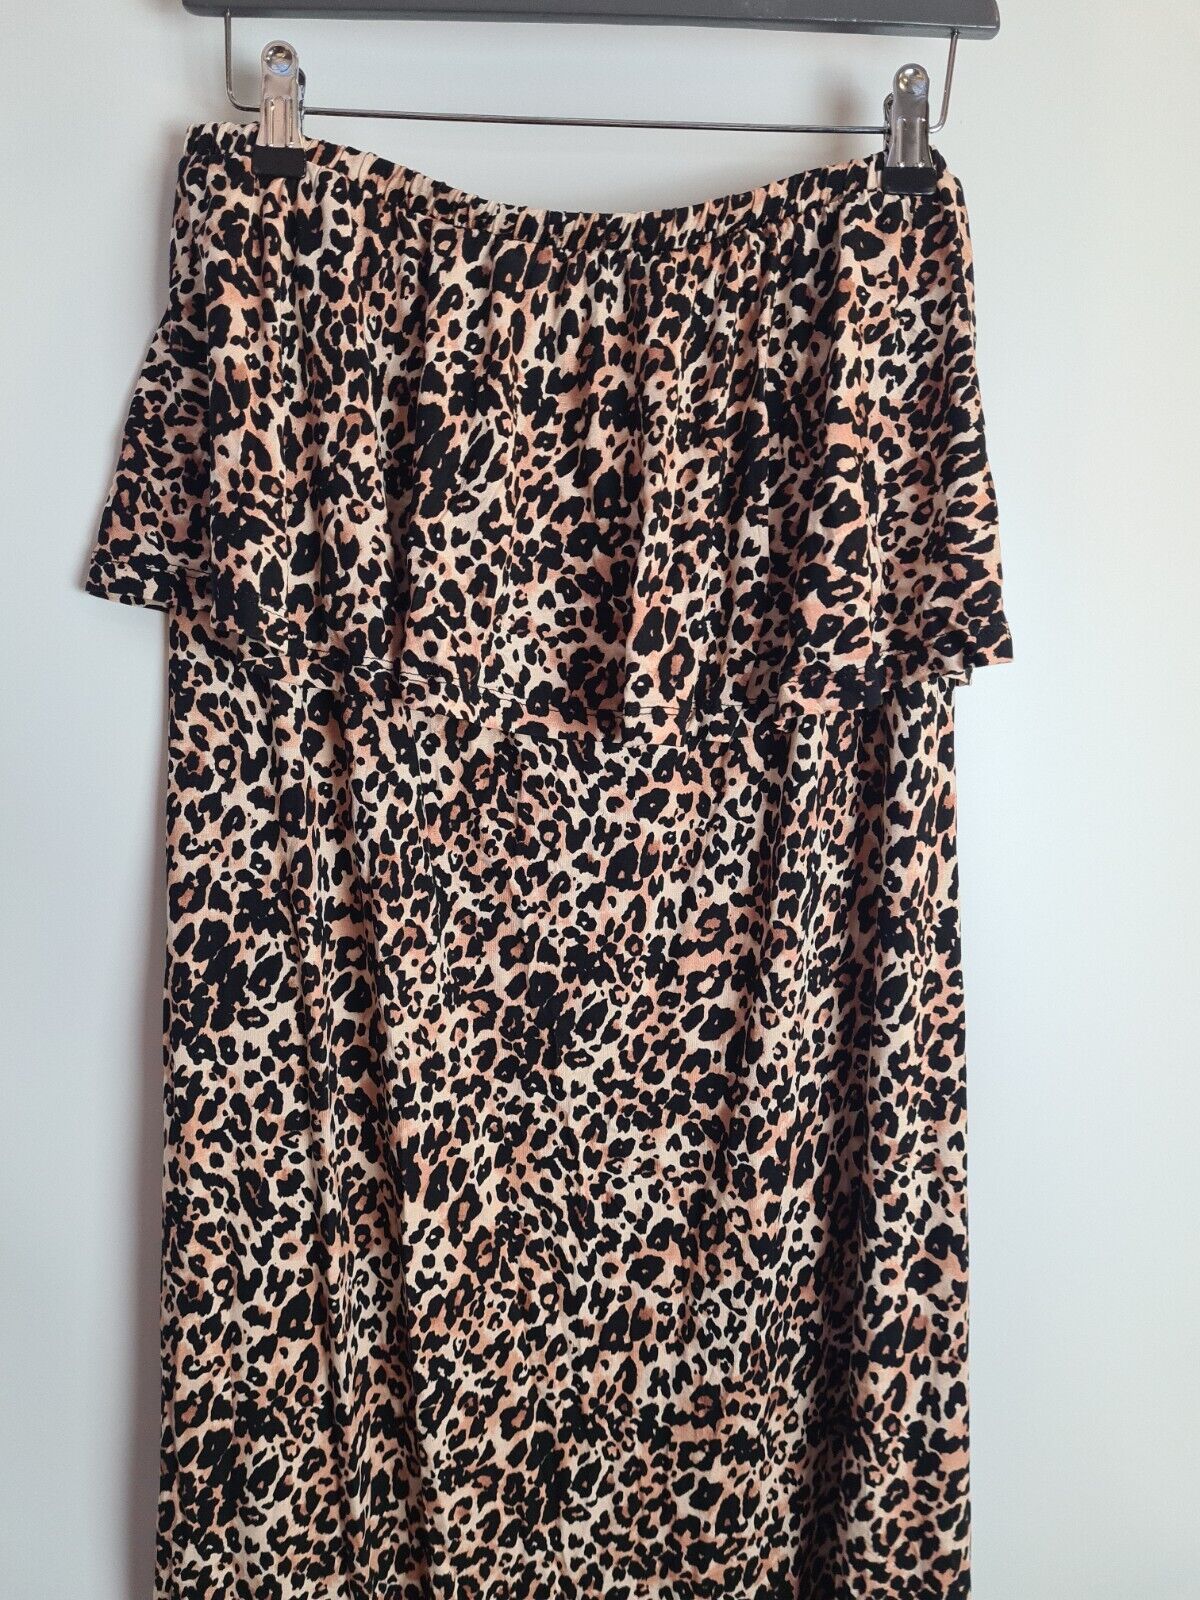 Animal Print Bardot Frill Side Split Dress Size 14 **** V292